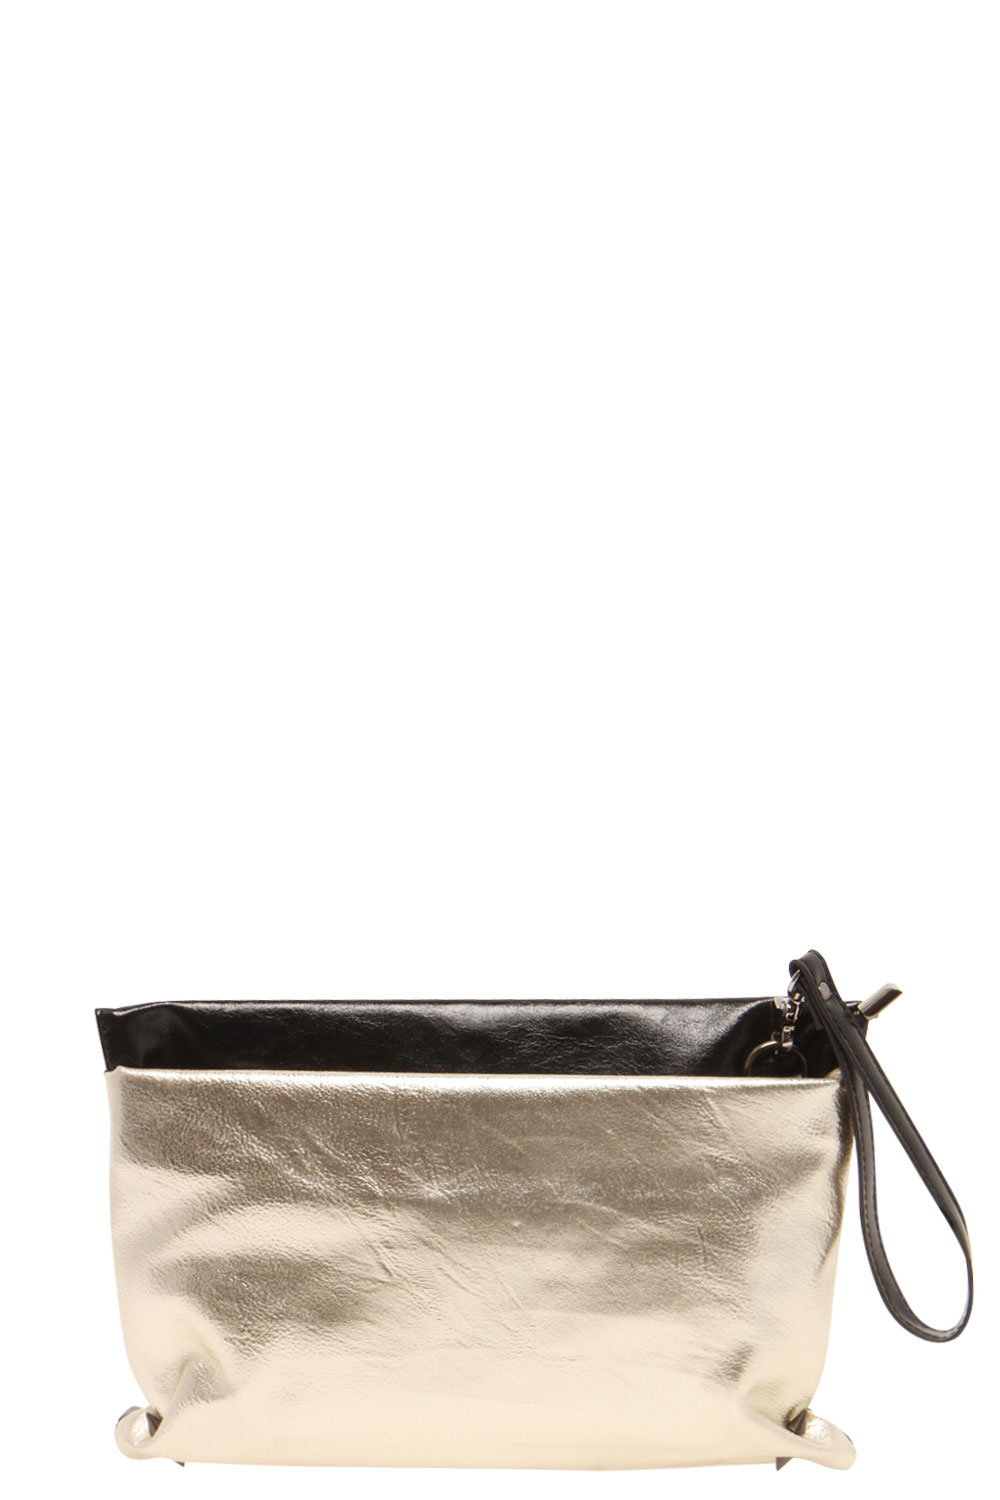 Tillie Pocket Front Clutch Bag - gold,